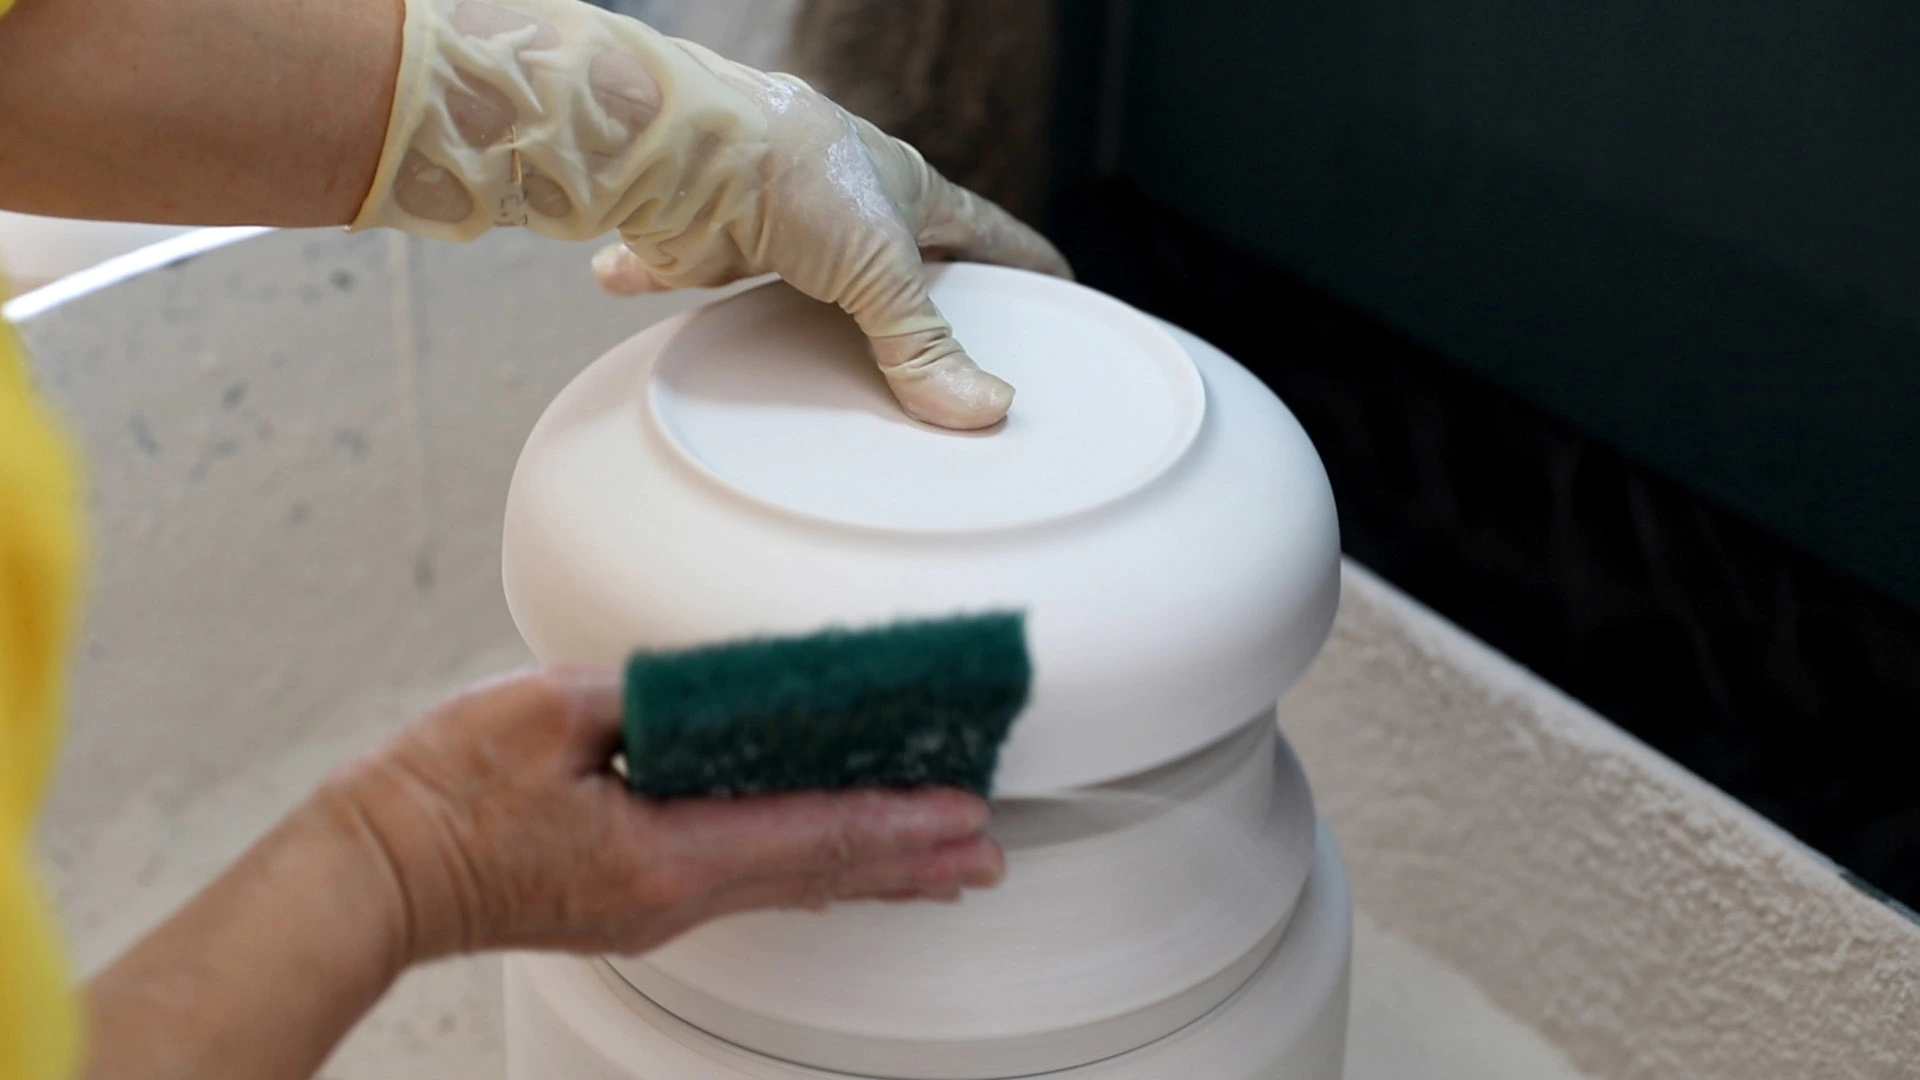 Ceramic factory production process - repairing water